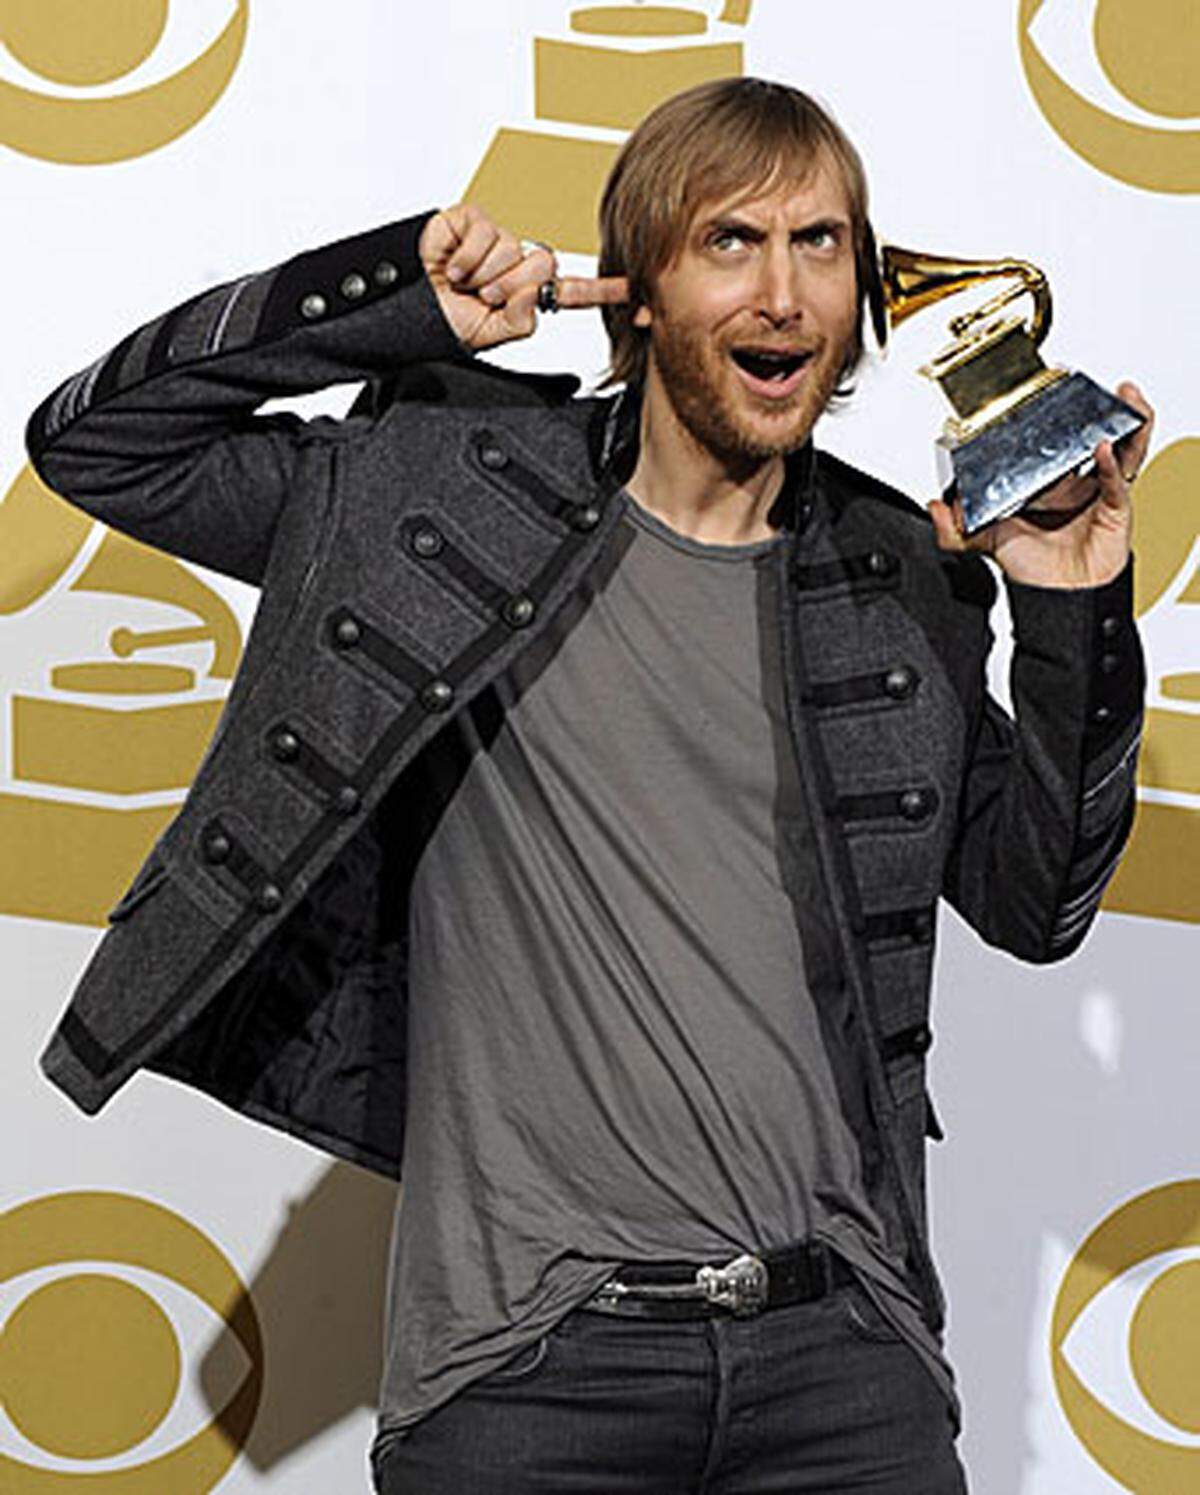 Der französische DJ und Produzent David Guetta wurde für "When Love Takes Over" mit dem PReis für das Beste Remixed Album prämiert.